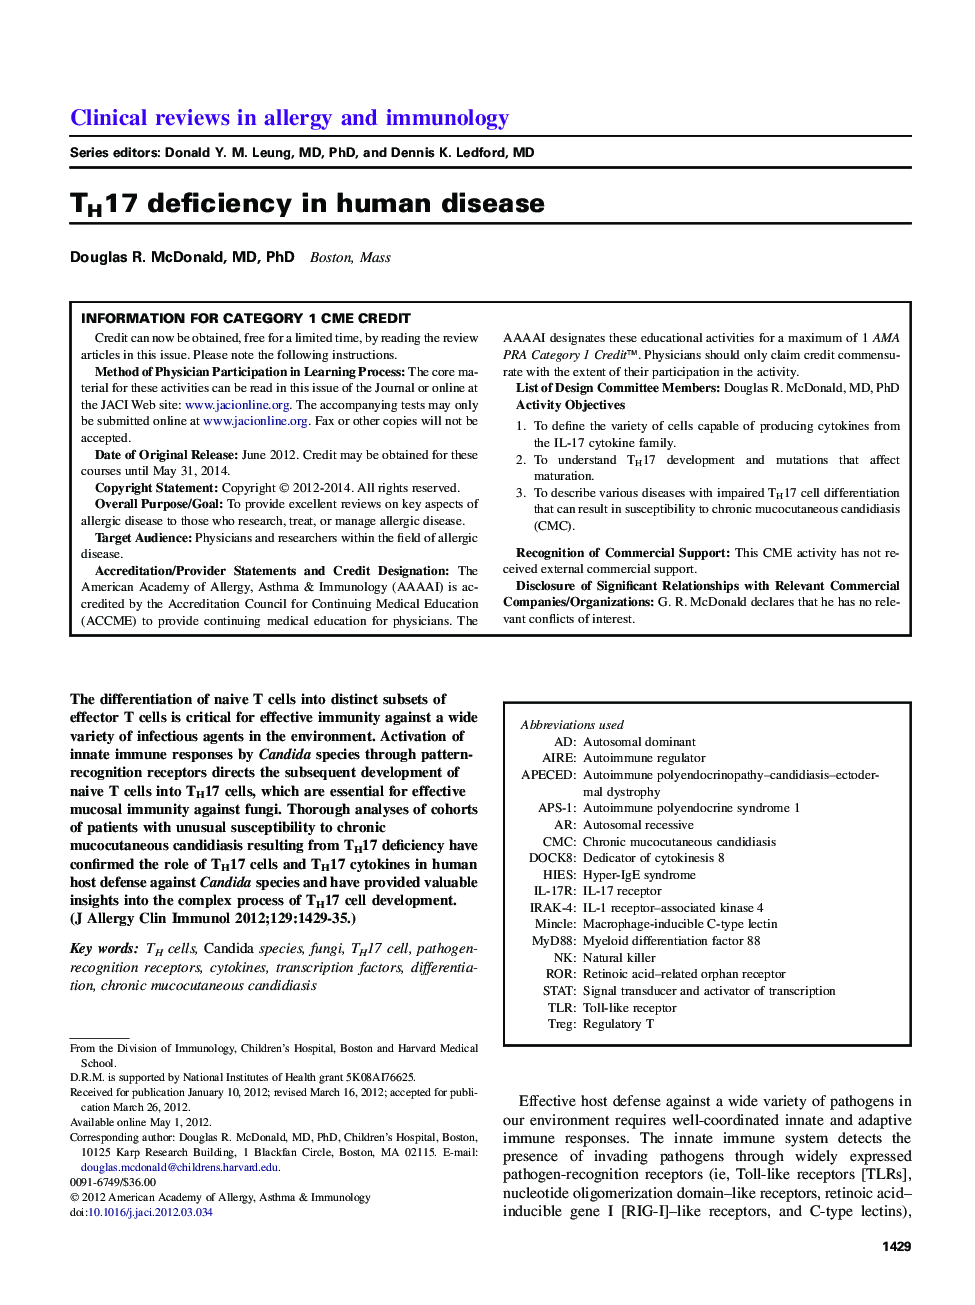 TH17 deficiency in human disease